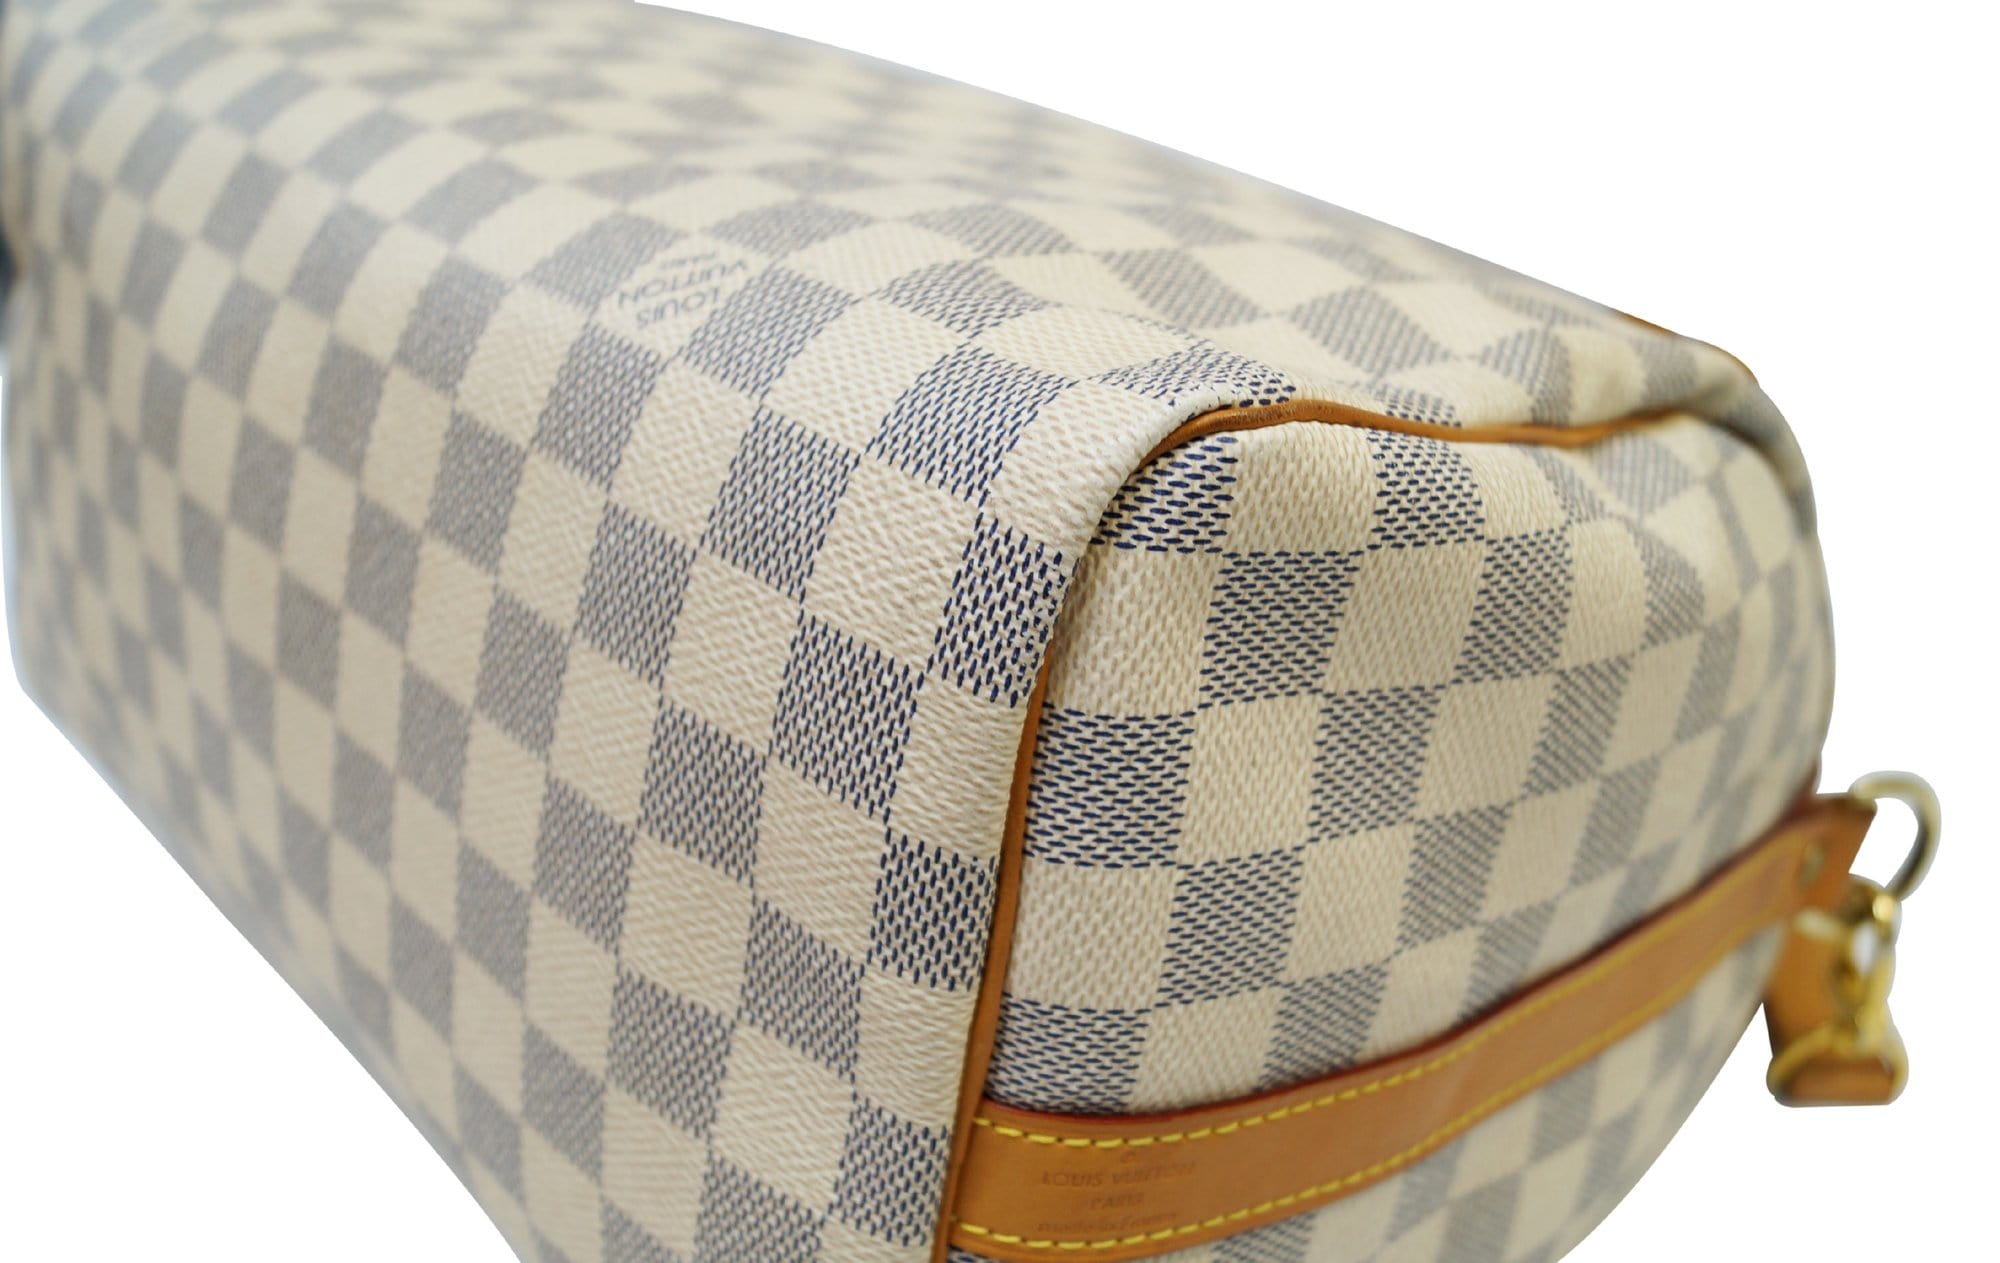 Speedy 30 w/Strap Damier Azur – Keeks Designer Handbags